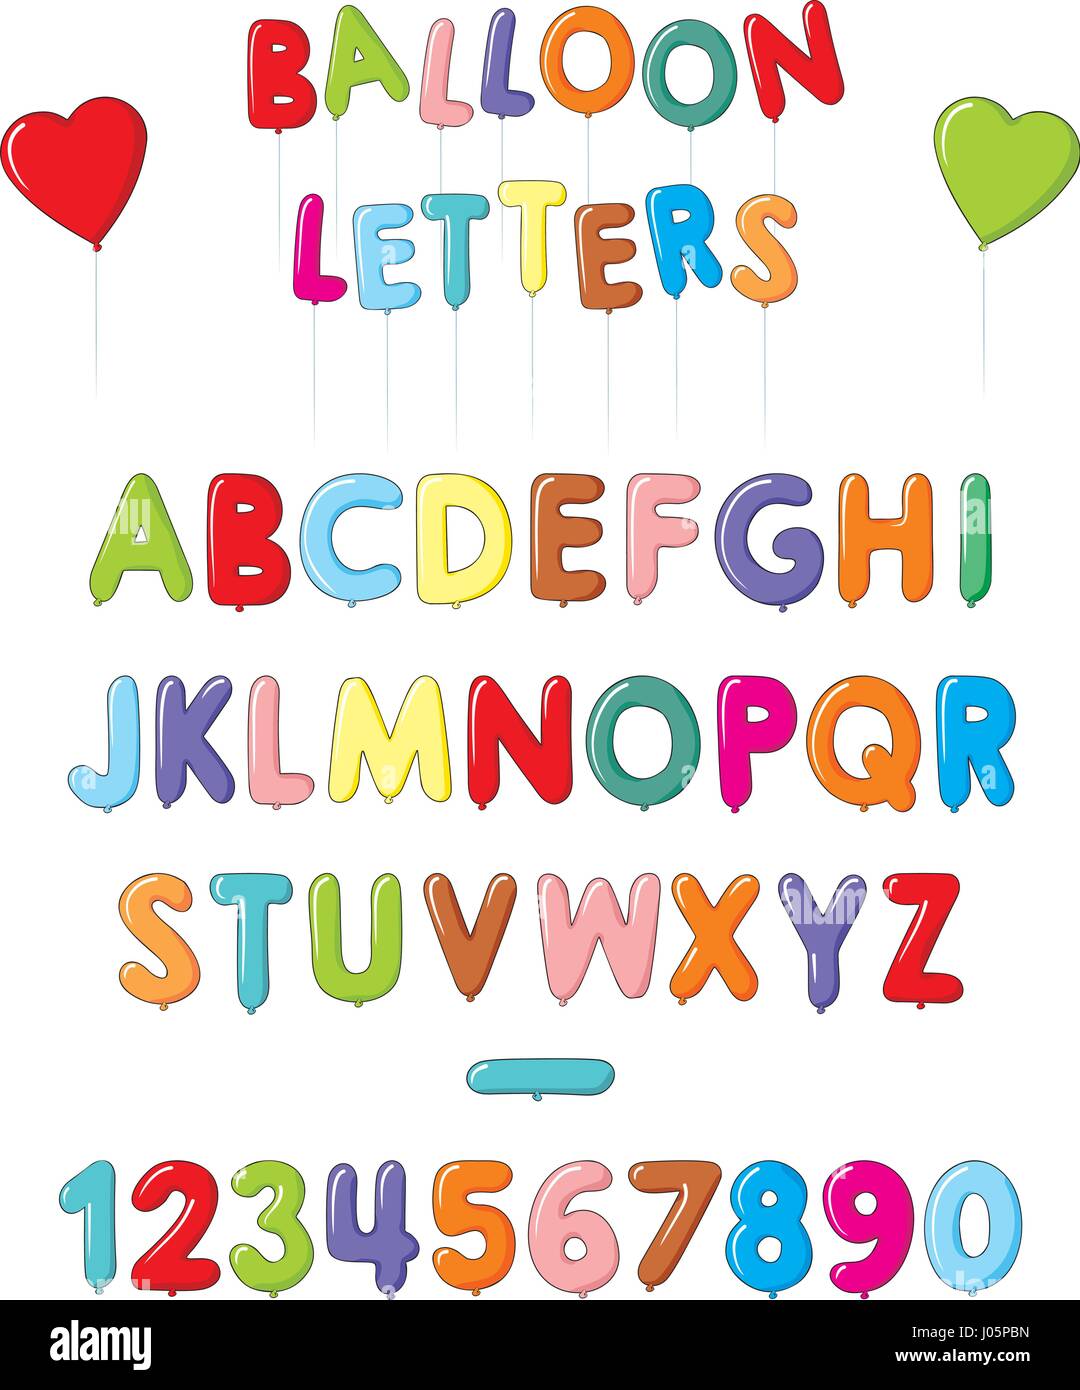 Ballon-Buchstaben und Zahlen auf weißem Hintergrund. Ballon bunte Schrift.  Isolierte Vektor-illustration Stock-Vektorgrafik - Alamy